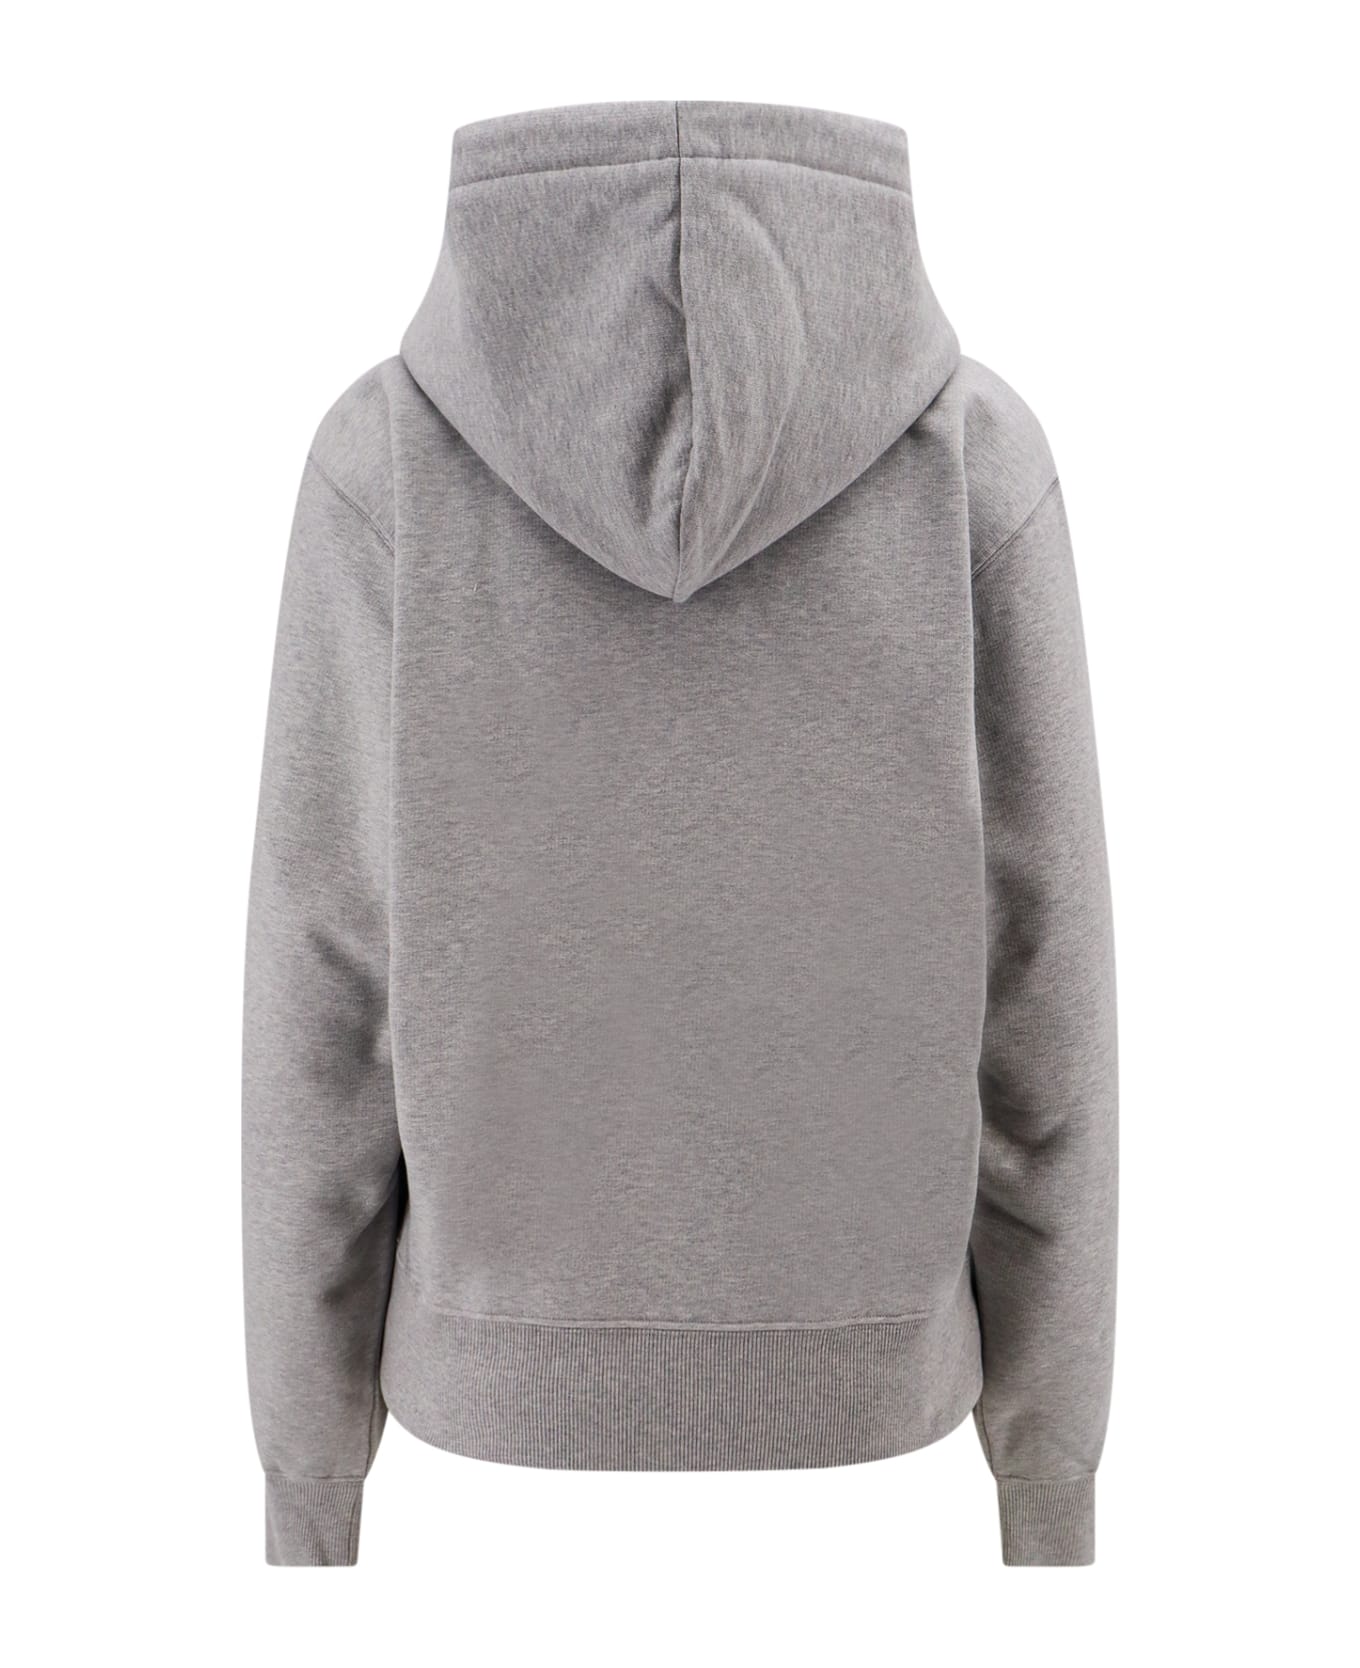 Saint Laurent Sweatshirt - Grey